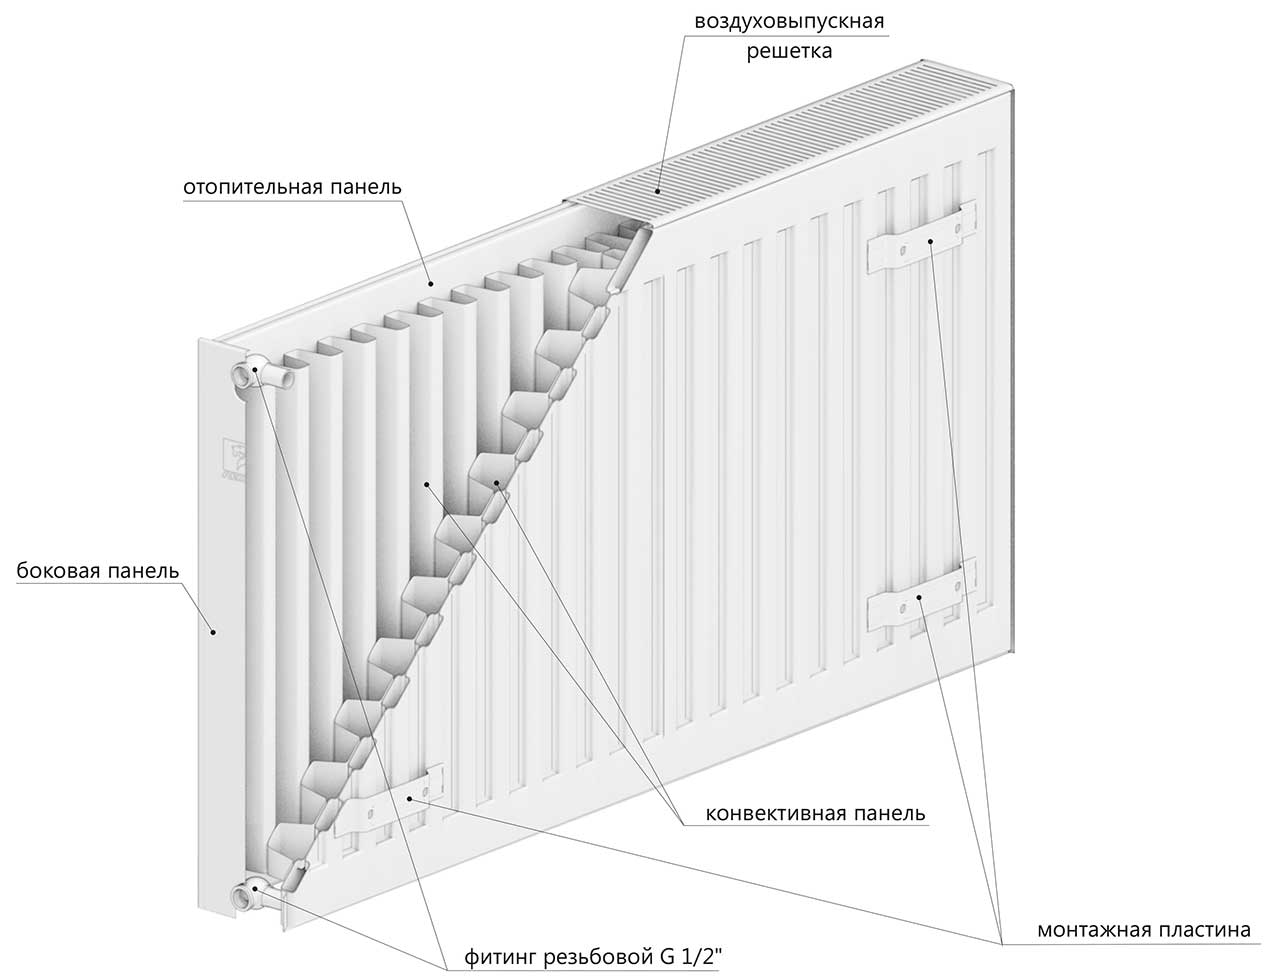 Стальной панельный радиатор DD PREMIUM TIP 22 500x1400 (VaillantGroup)